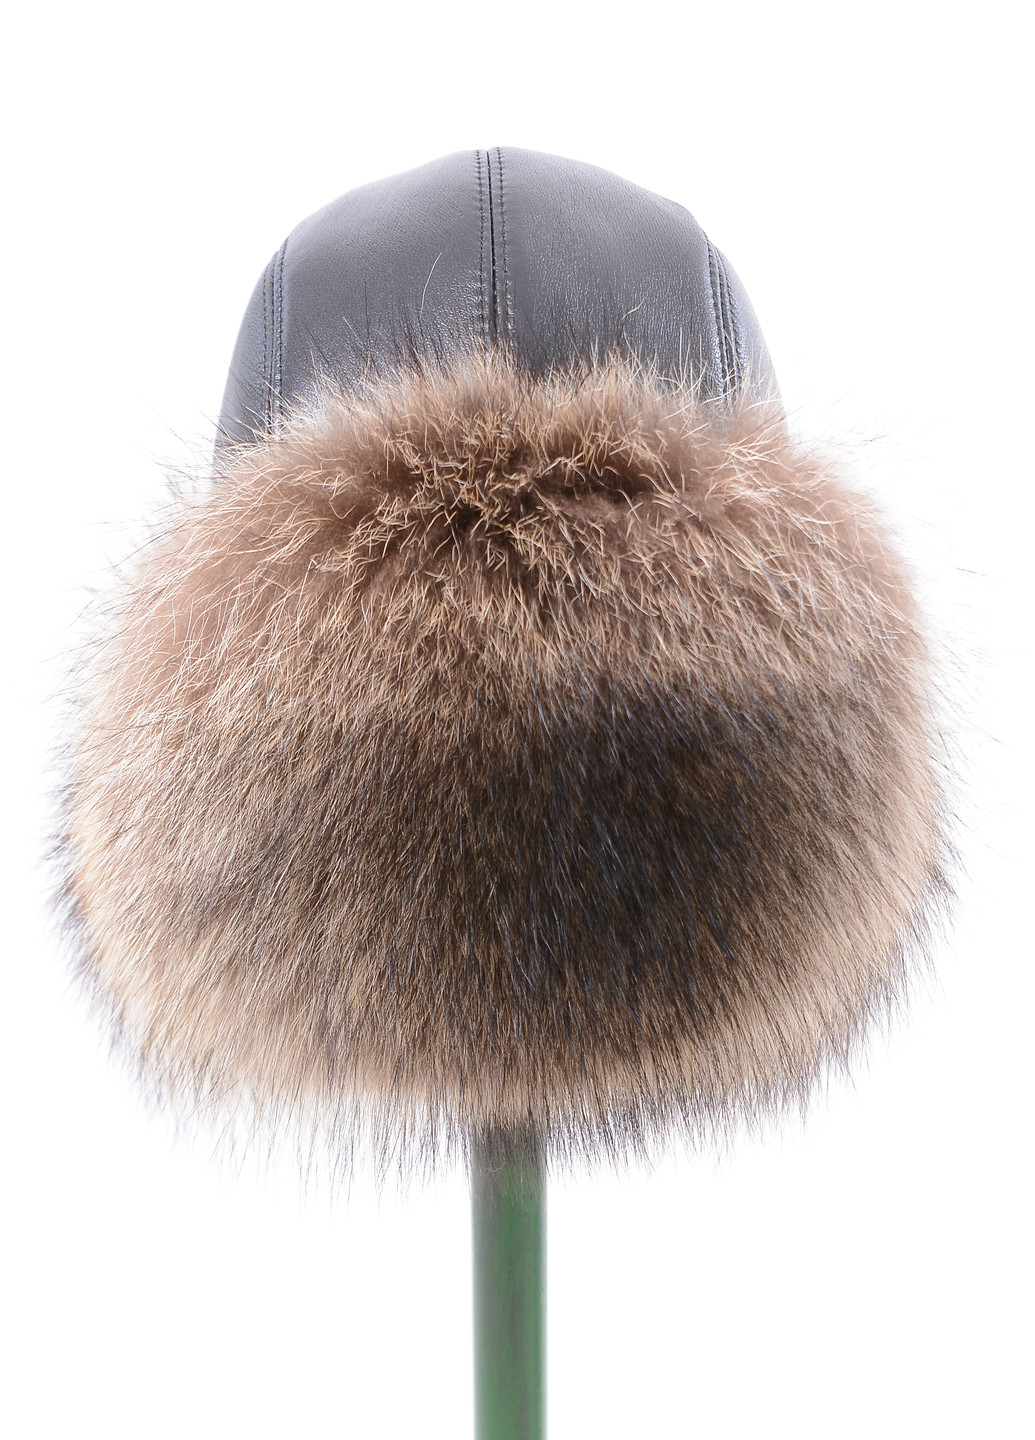 Мужская меховая шапка ушанка из натурального меха енота Меховой Стиль шапка ушанка (260165896)